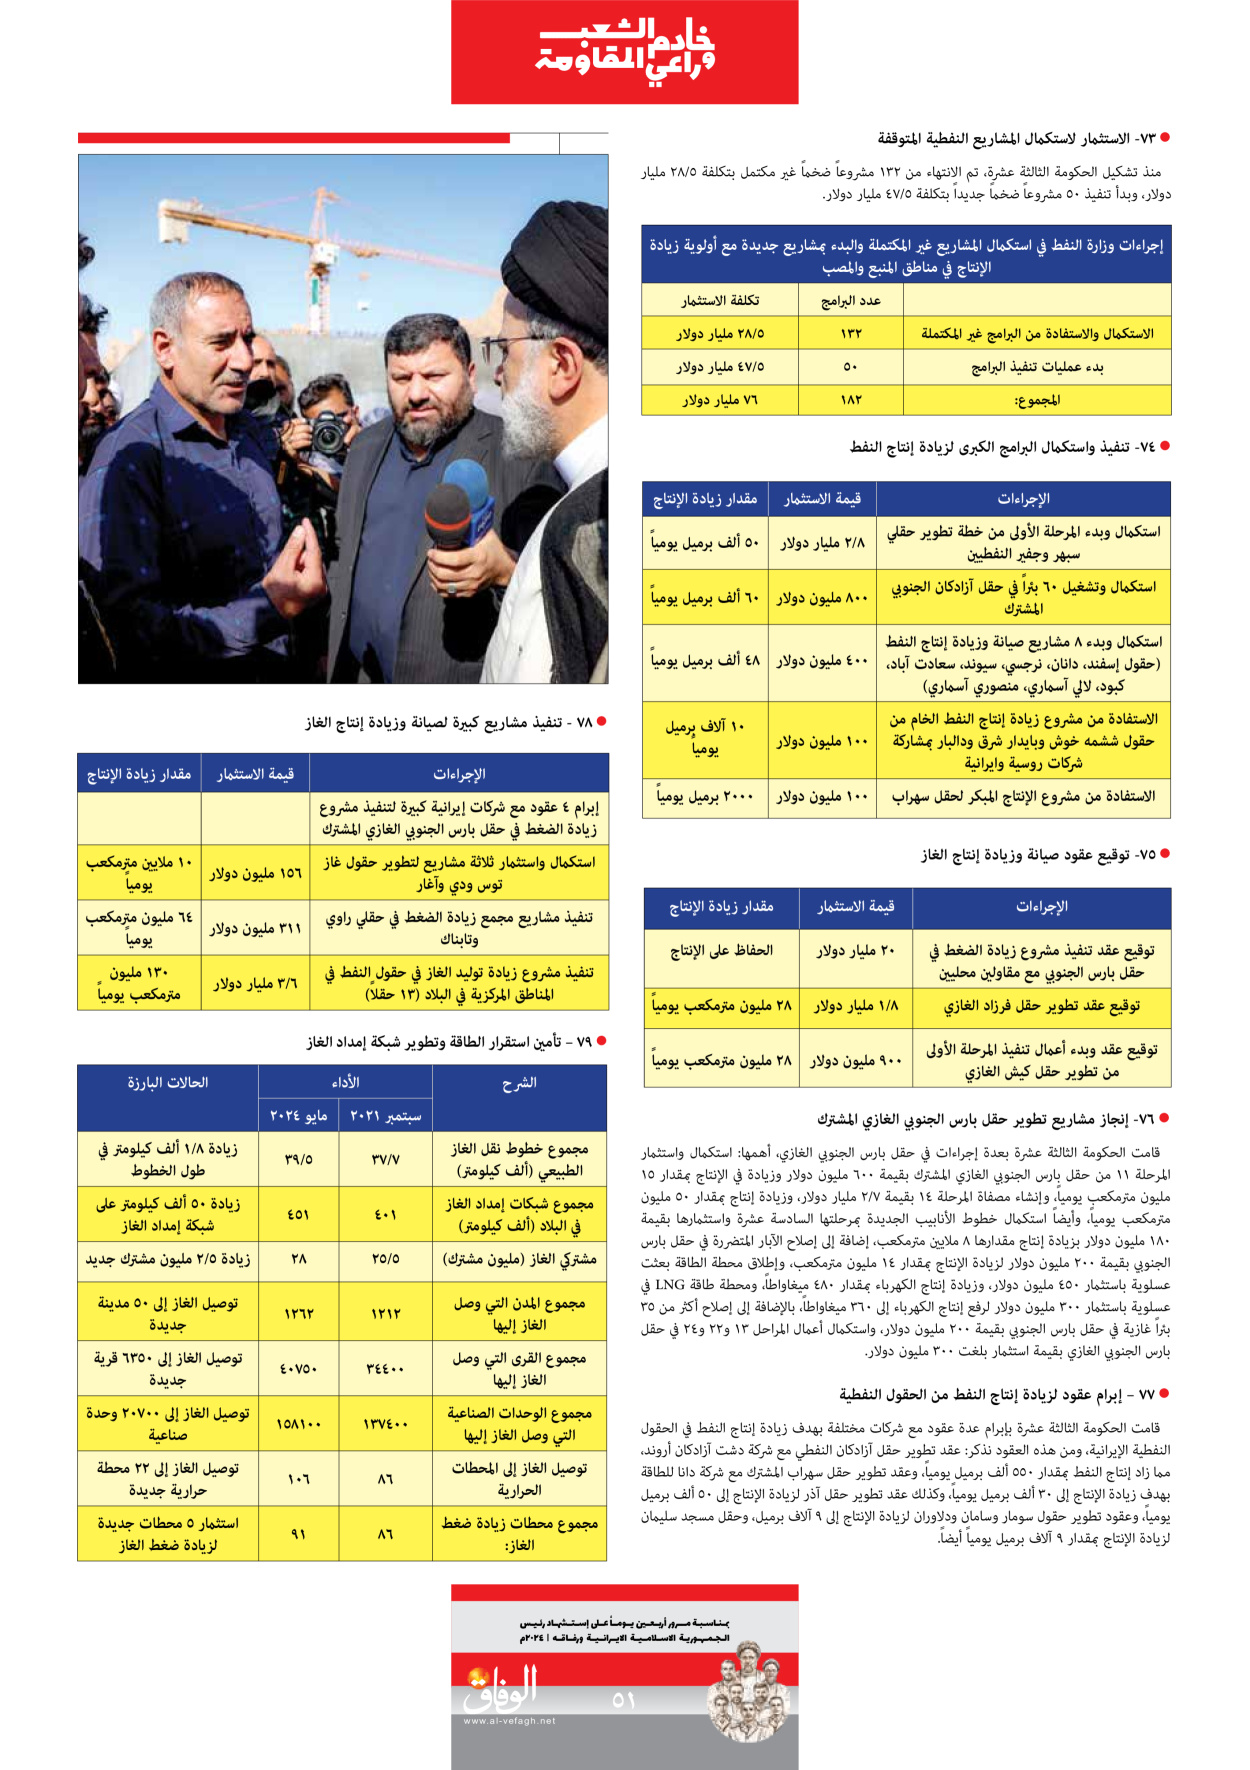 صحیفة ایران الدولیة الوفاق - ملحق ویژه نامه چهلم شهید رییسی - ٢٩ يونيو ٢٠٢٤ - الصفحة ٥۱